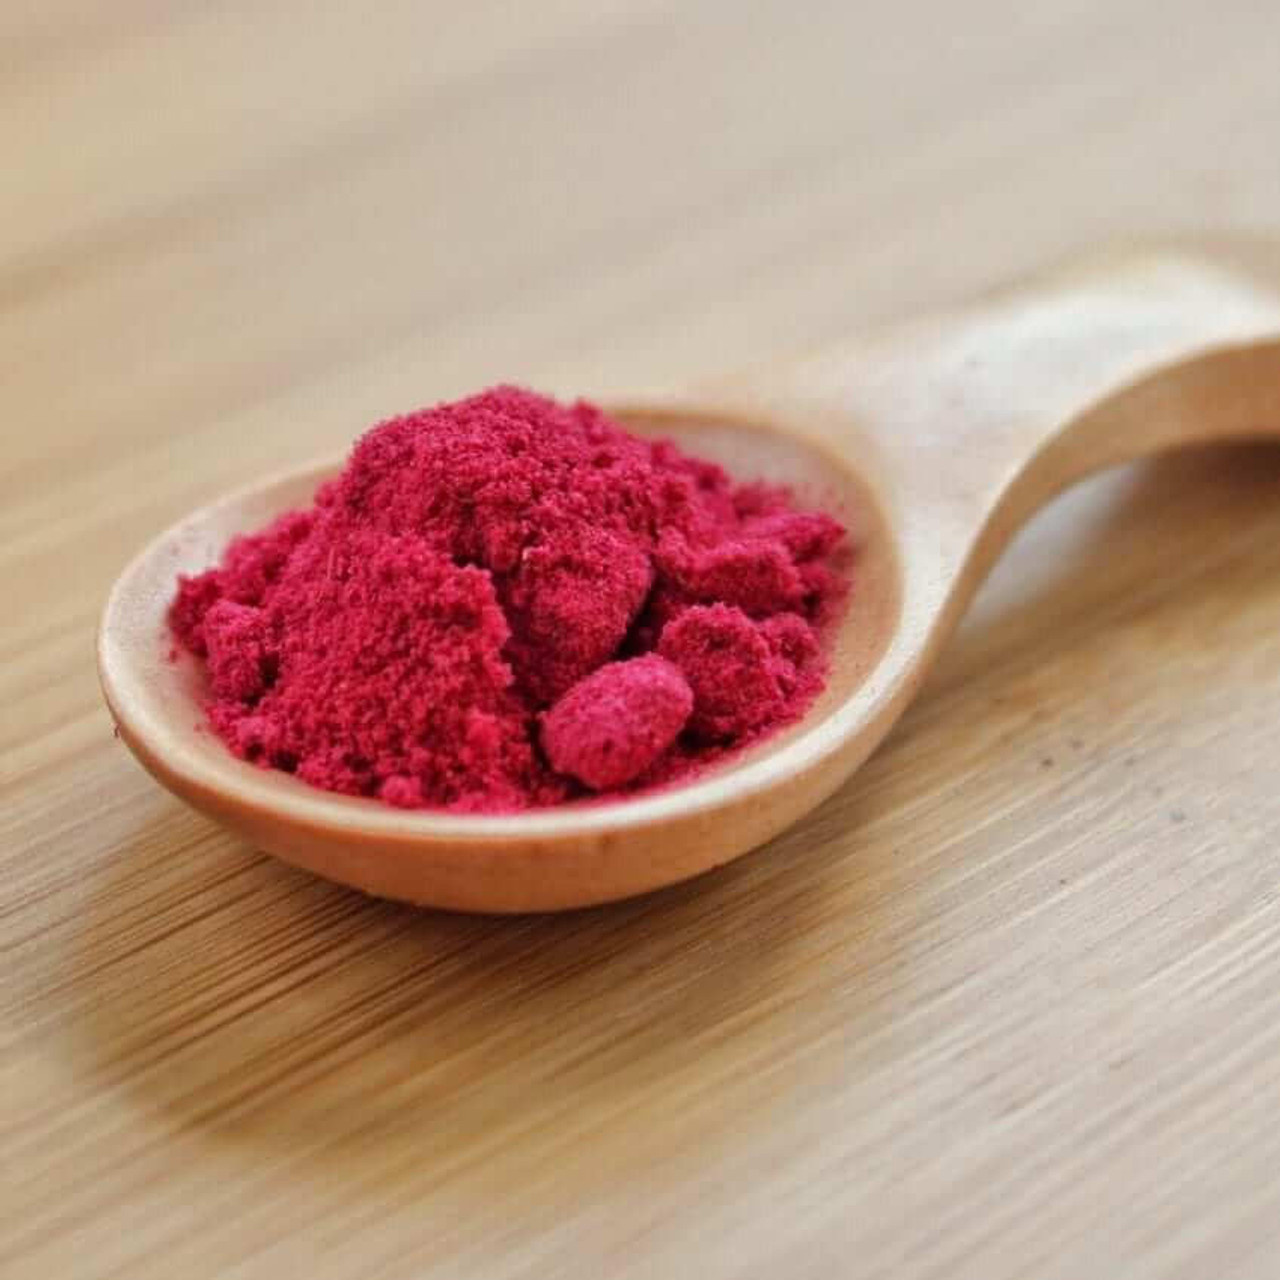  Rainforest supply Cranberry Powder 